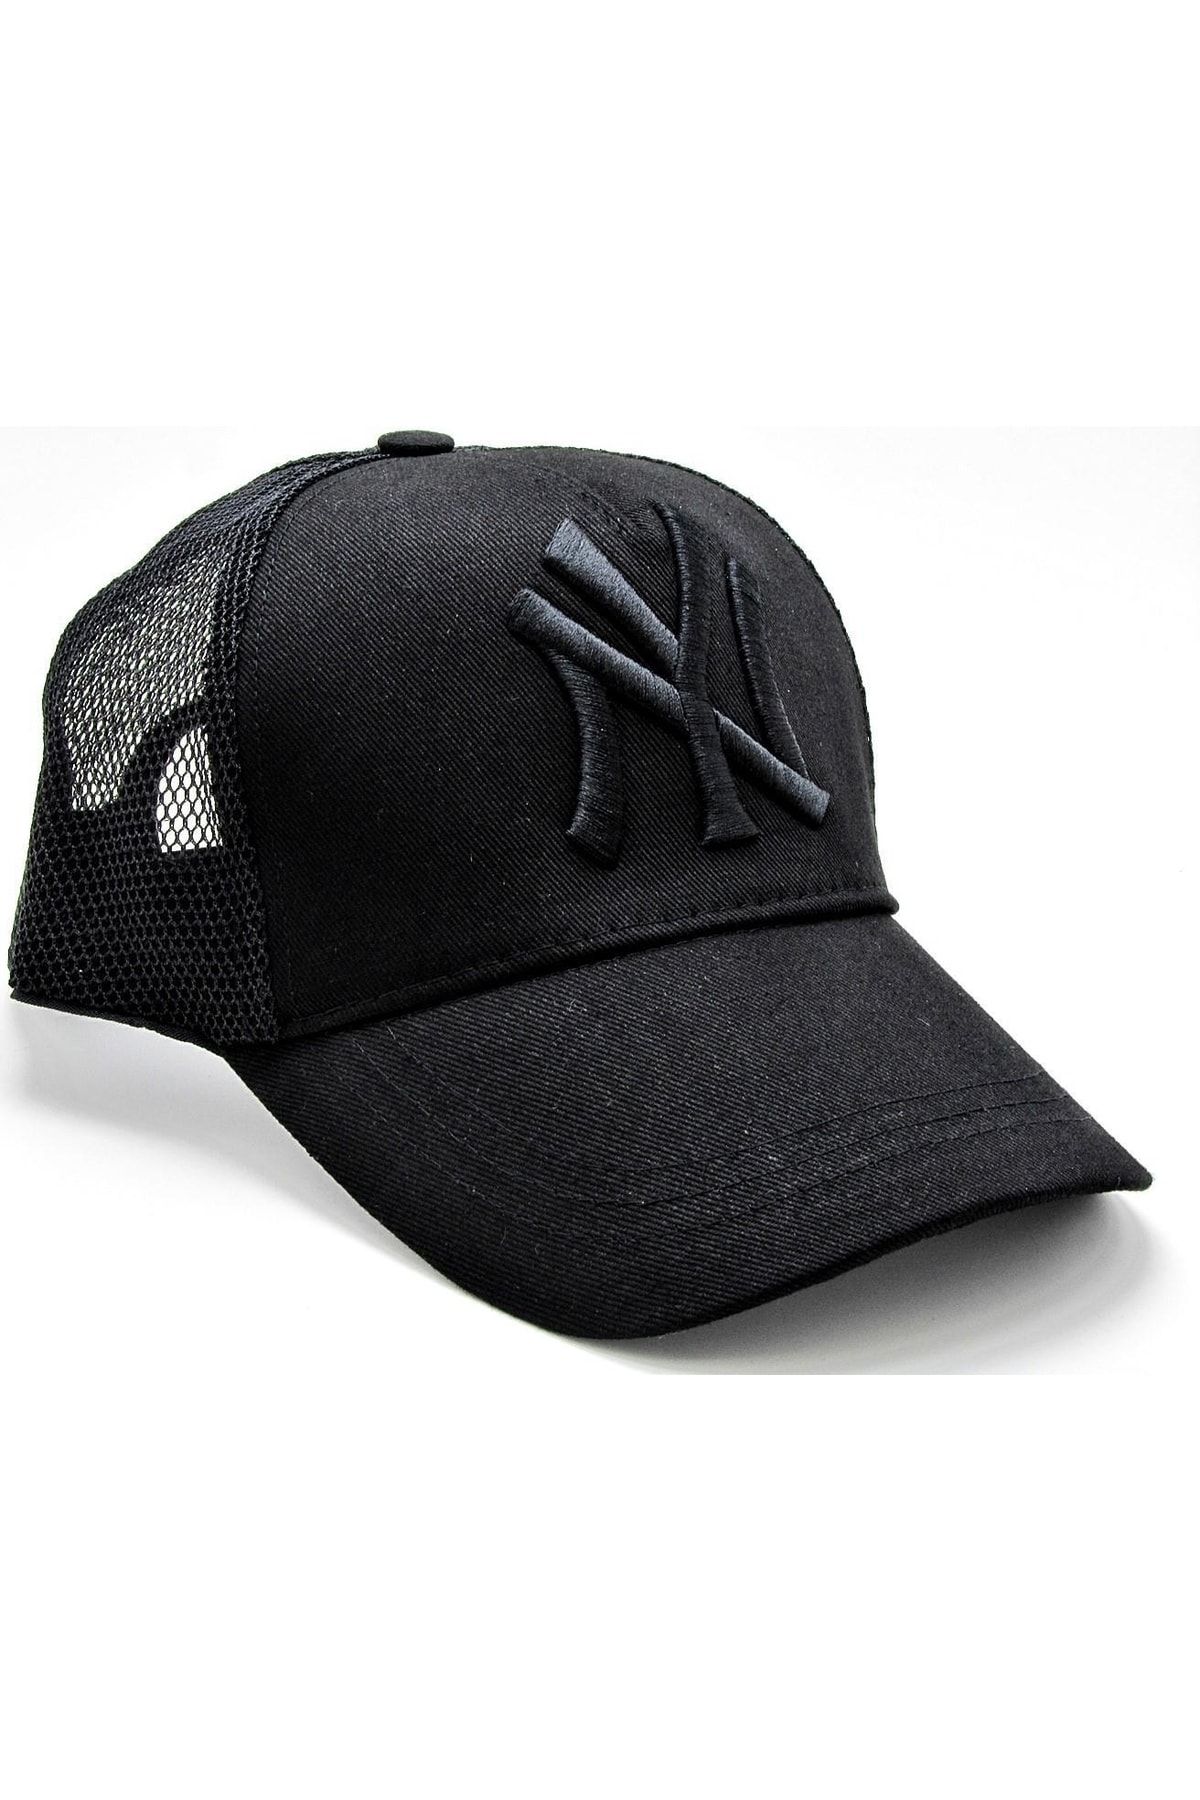 Takı Dükkanı Ny Cap Yazlık Fileli Unisex Şapka Cp222